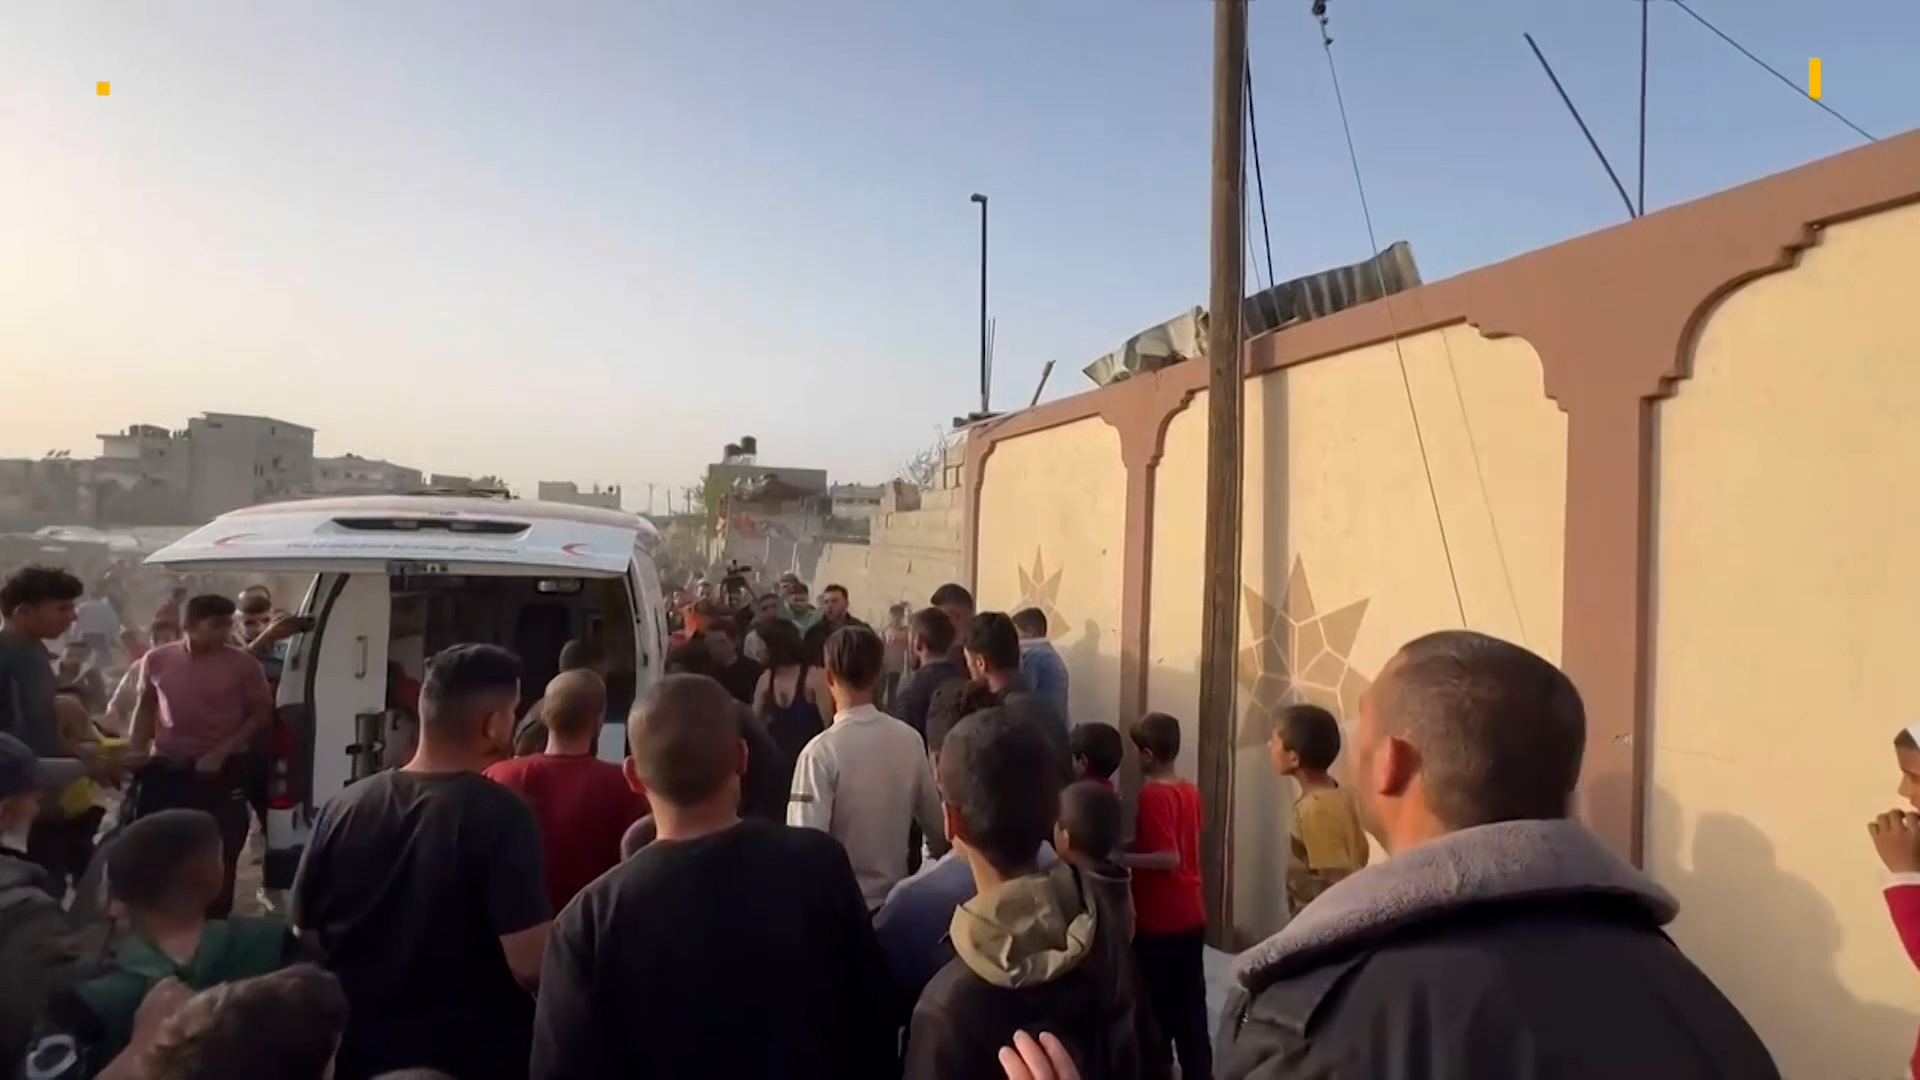 4 شهداء وأكثر من 10 مصابين بقصف قرب خيام للنازحين في رفح | البرامج – البوكس نيوز